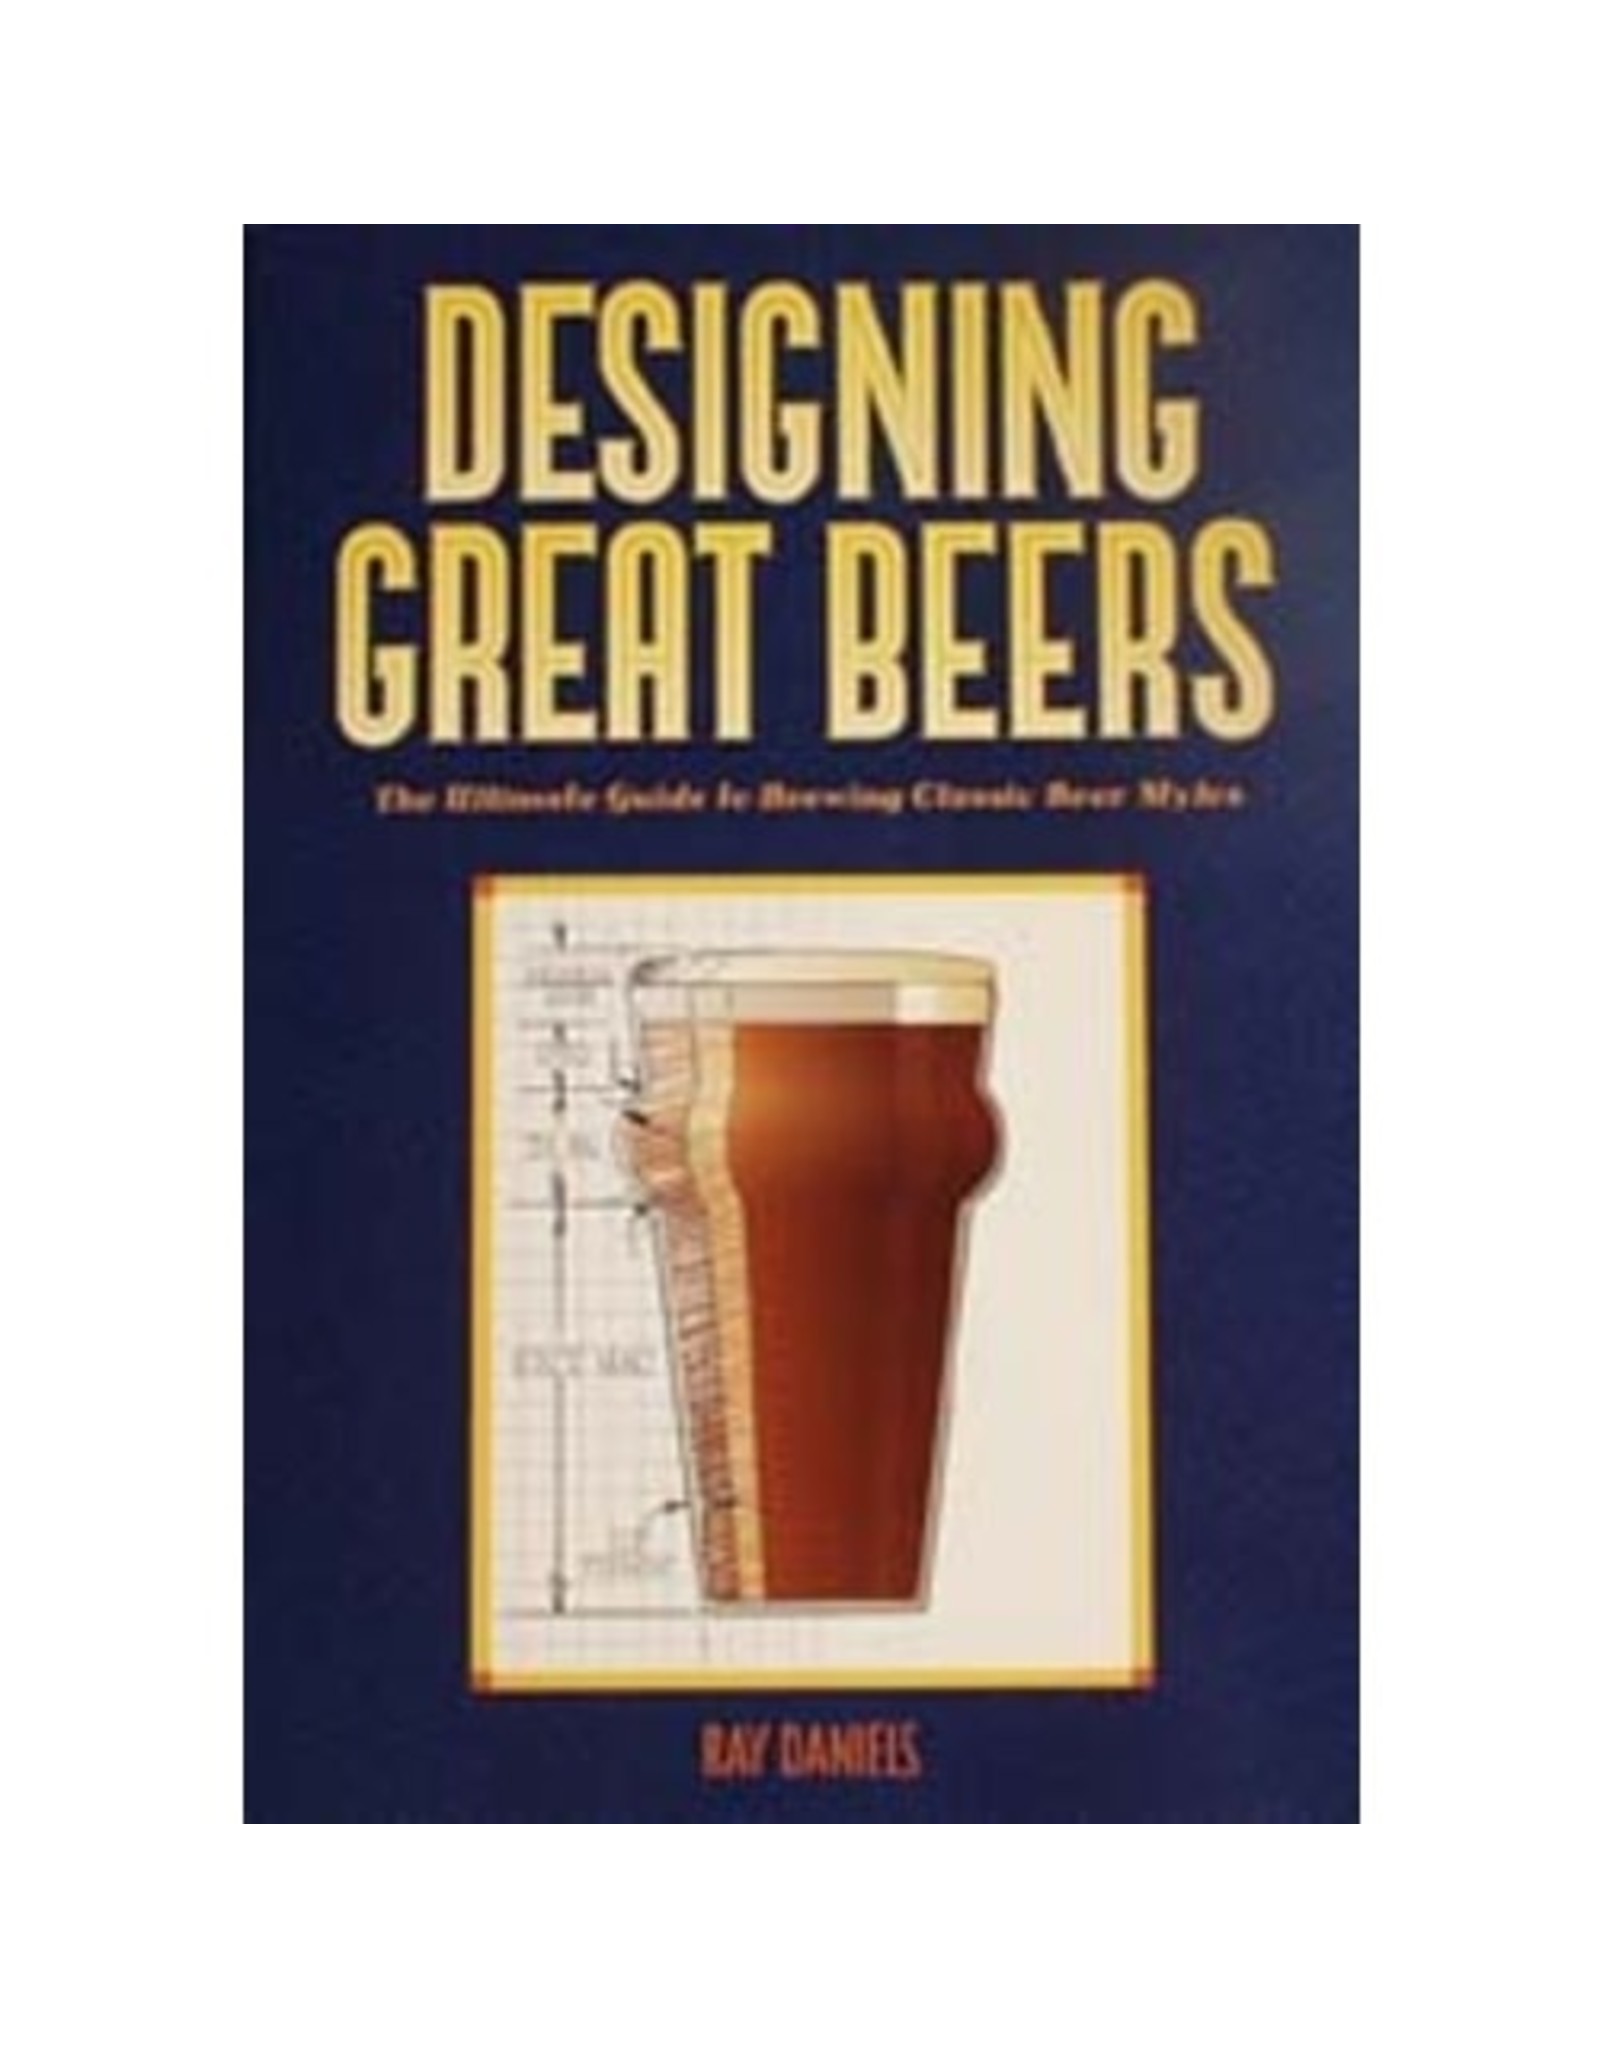 Designing Great Beers  (book)